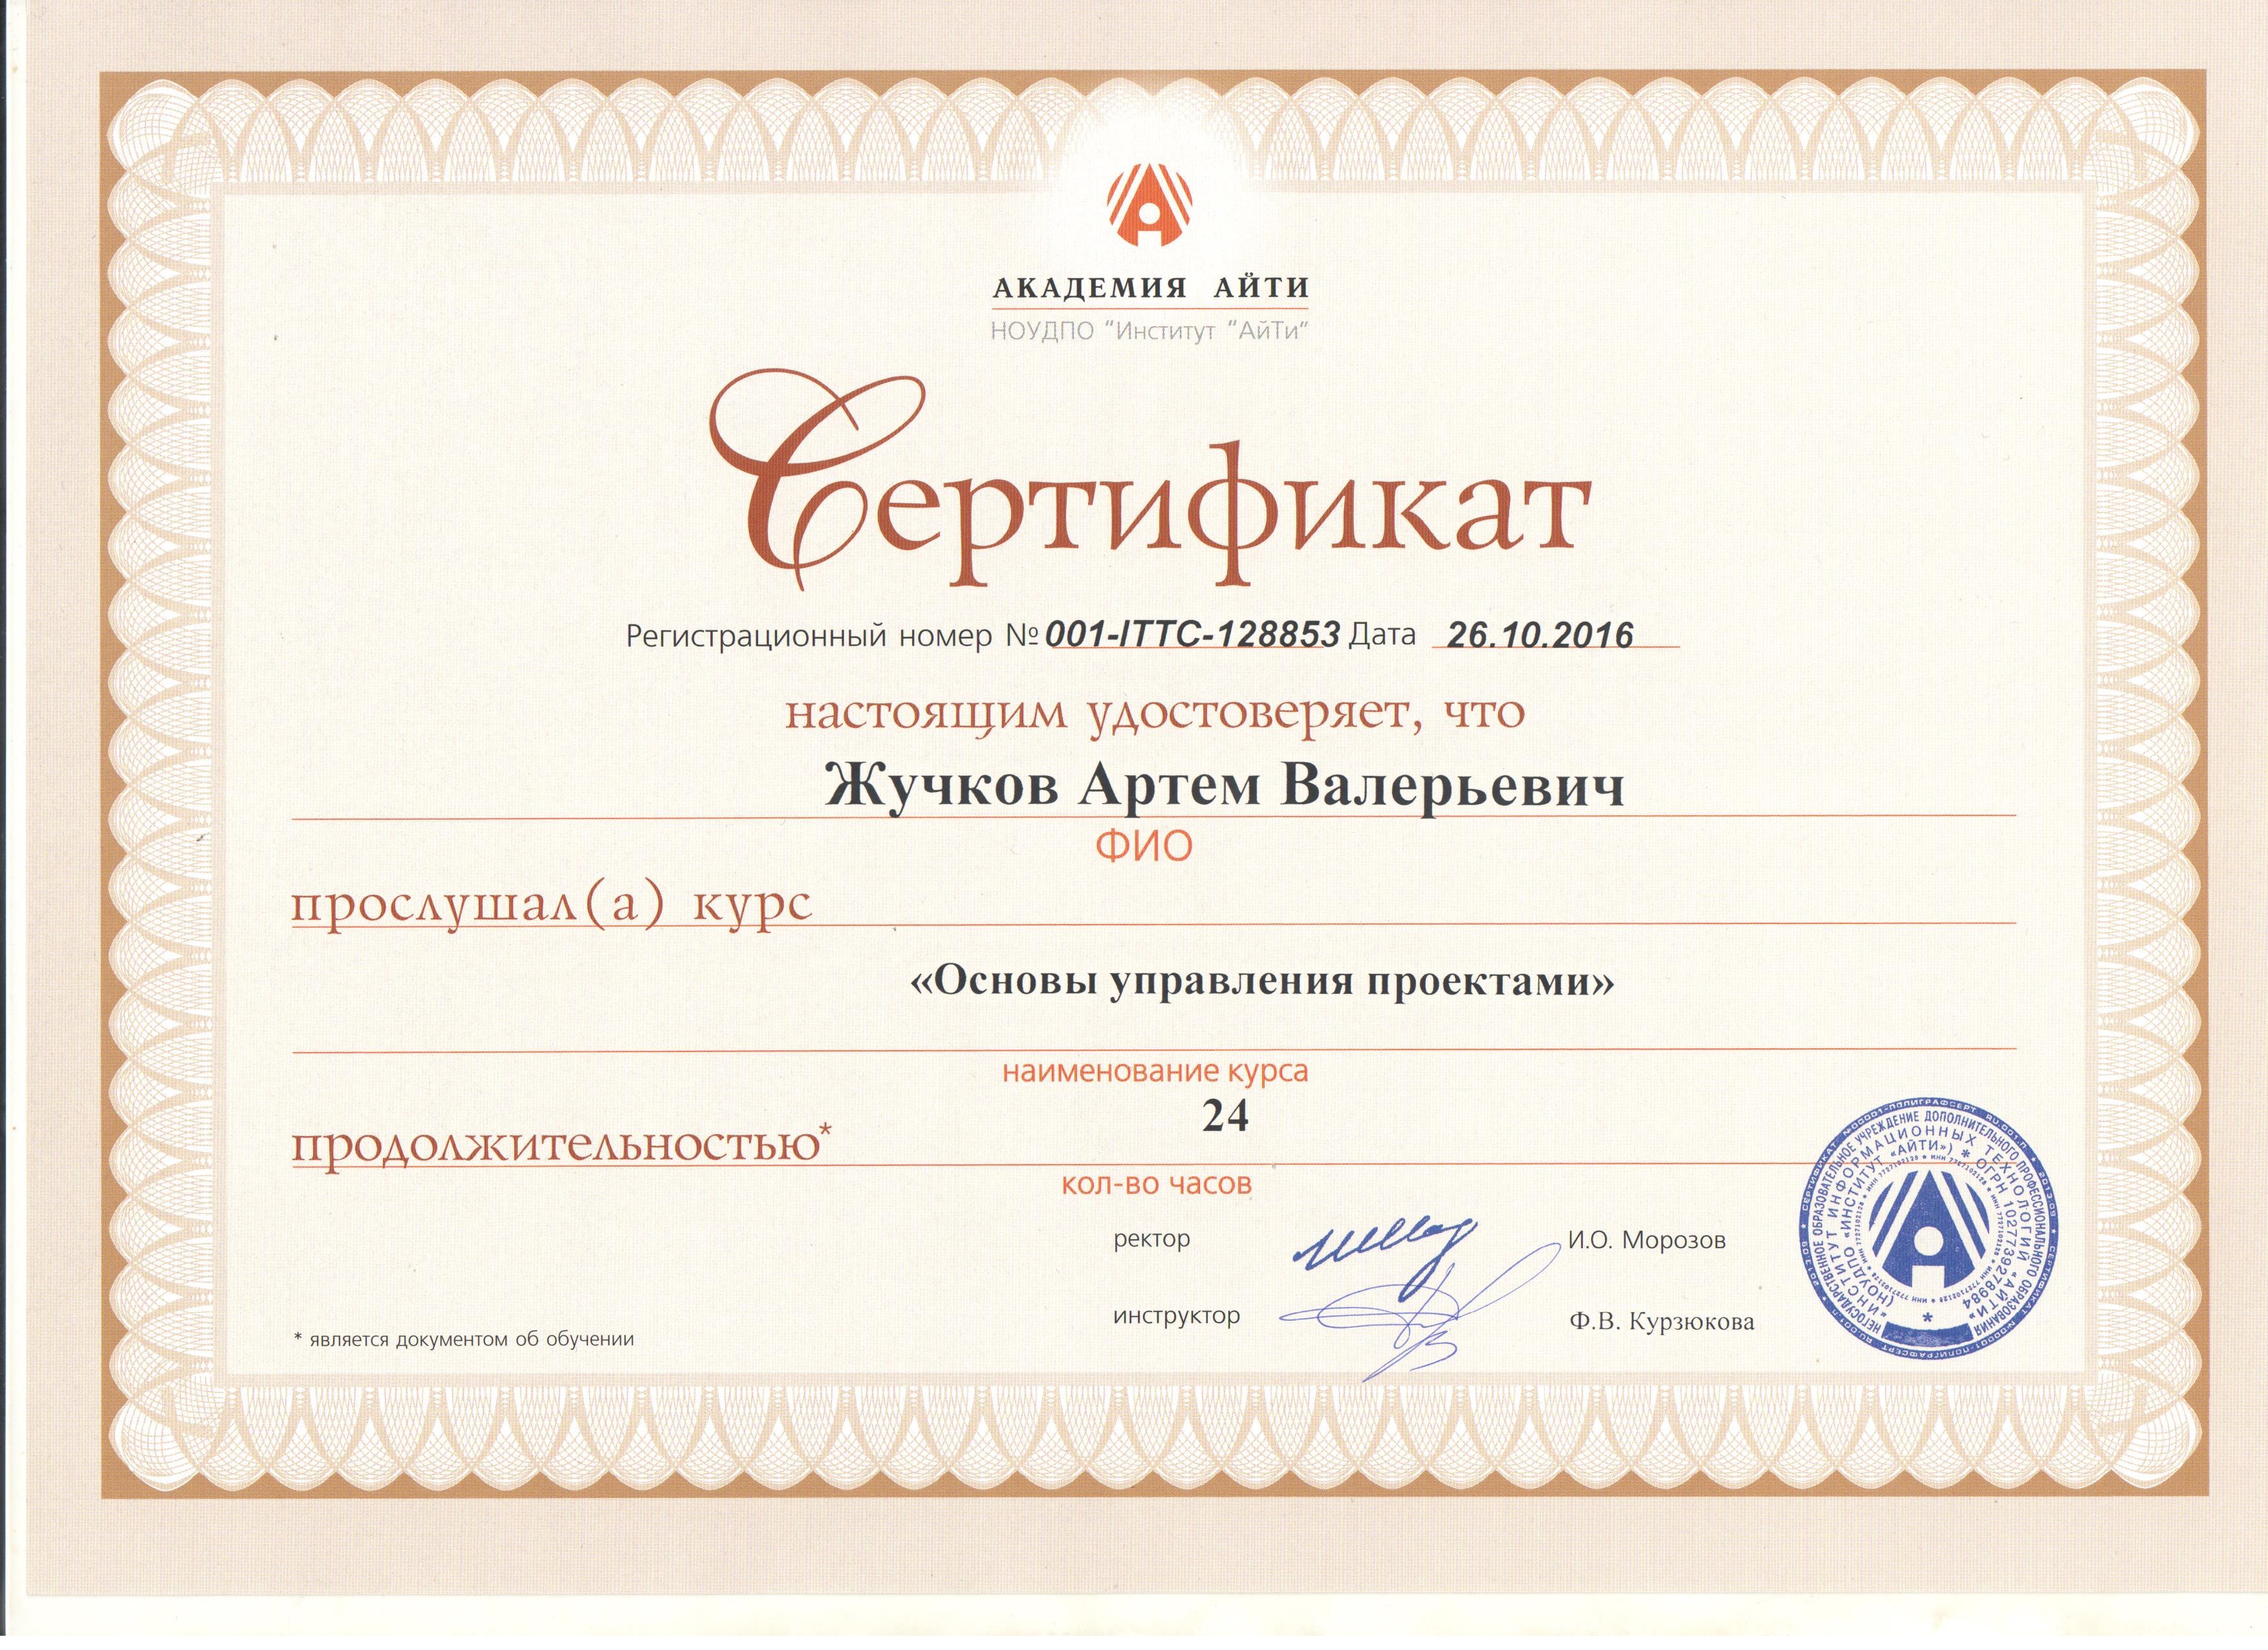 Сертификат Академии Ай-Ти по основам управления проектами